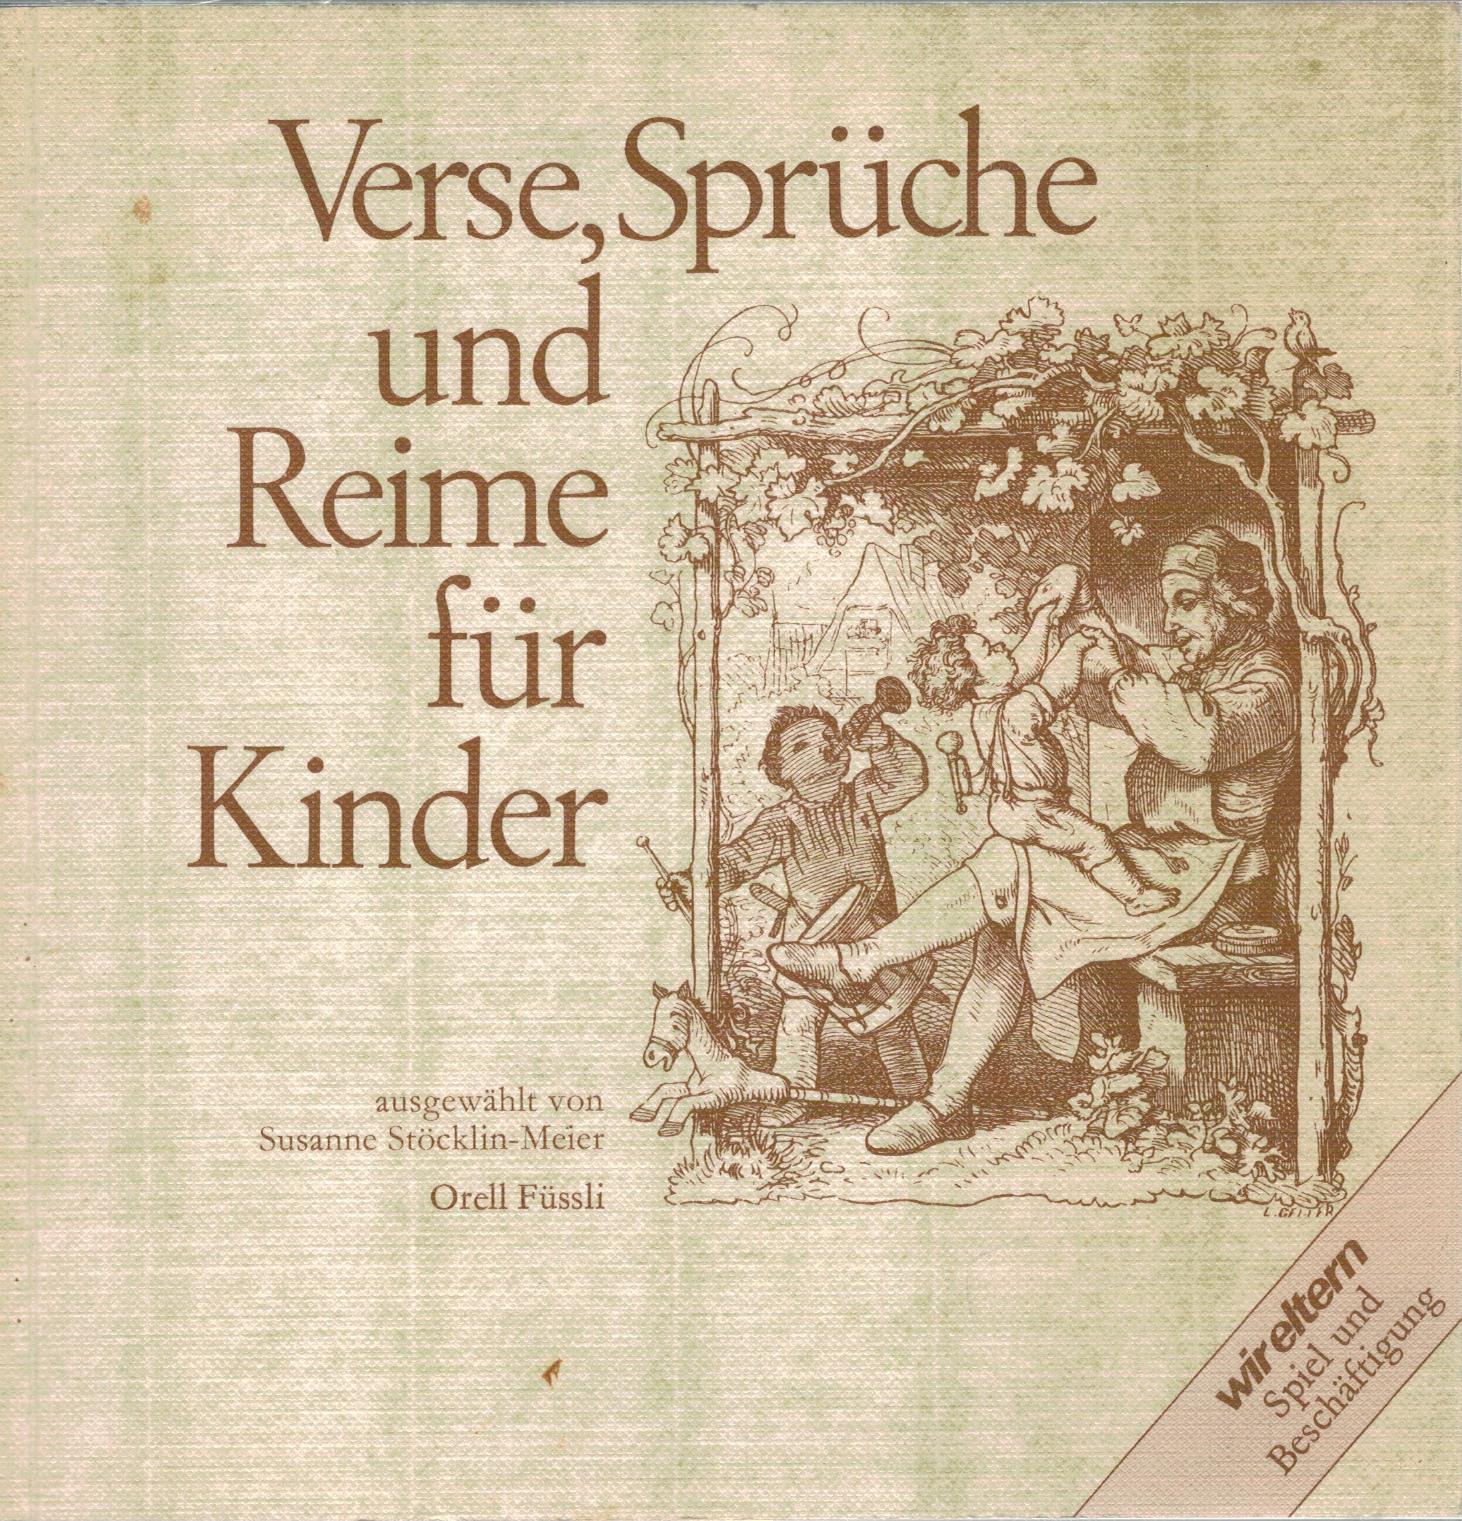 Verse, Sprüche und Reime für Kinder - Stöcklin-Meier, Susanne (Hrsg.)